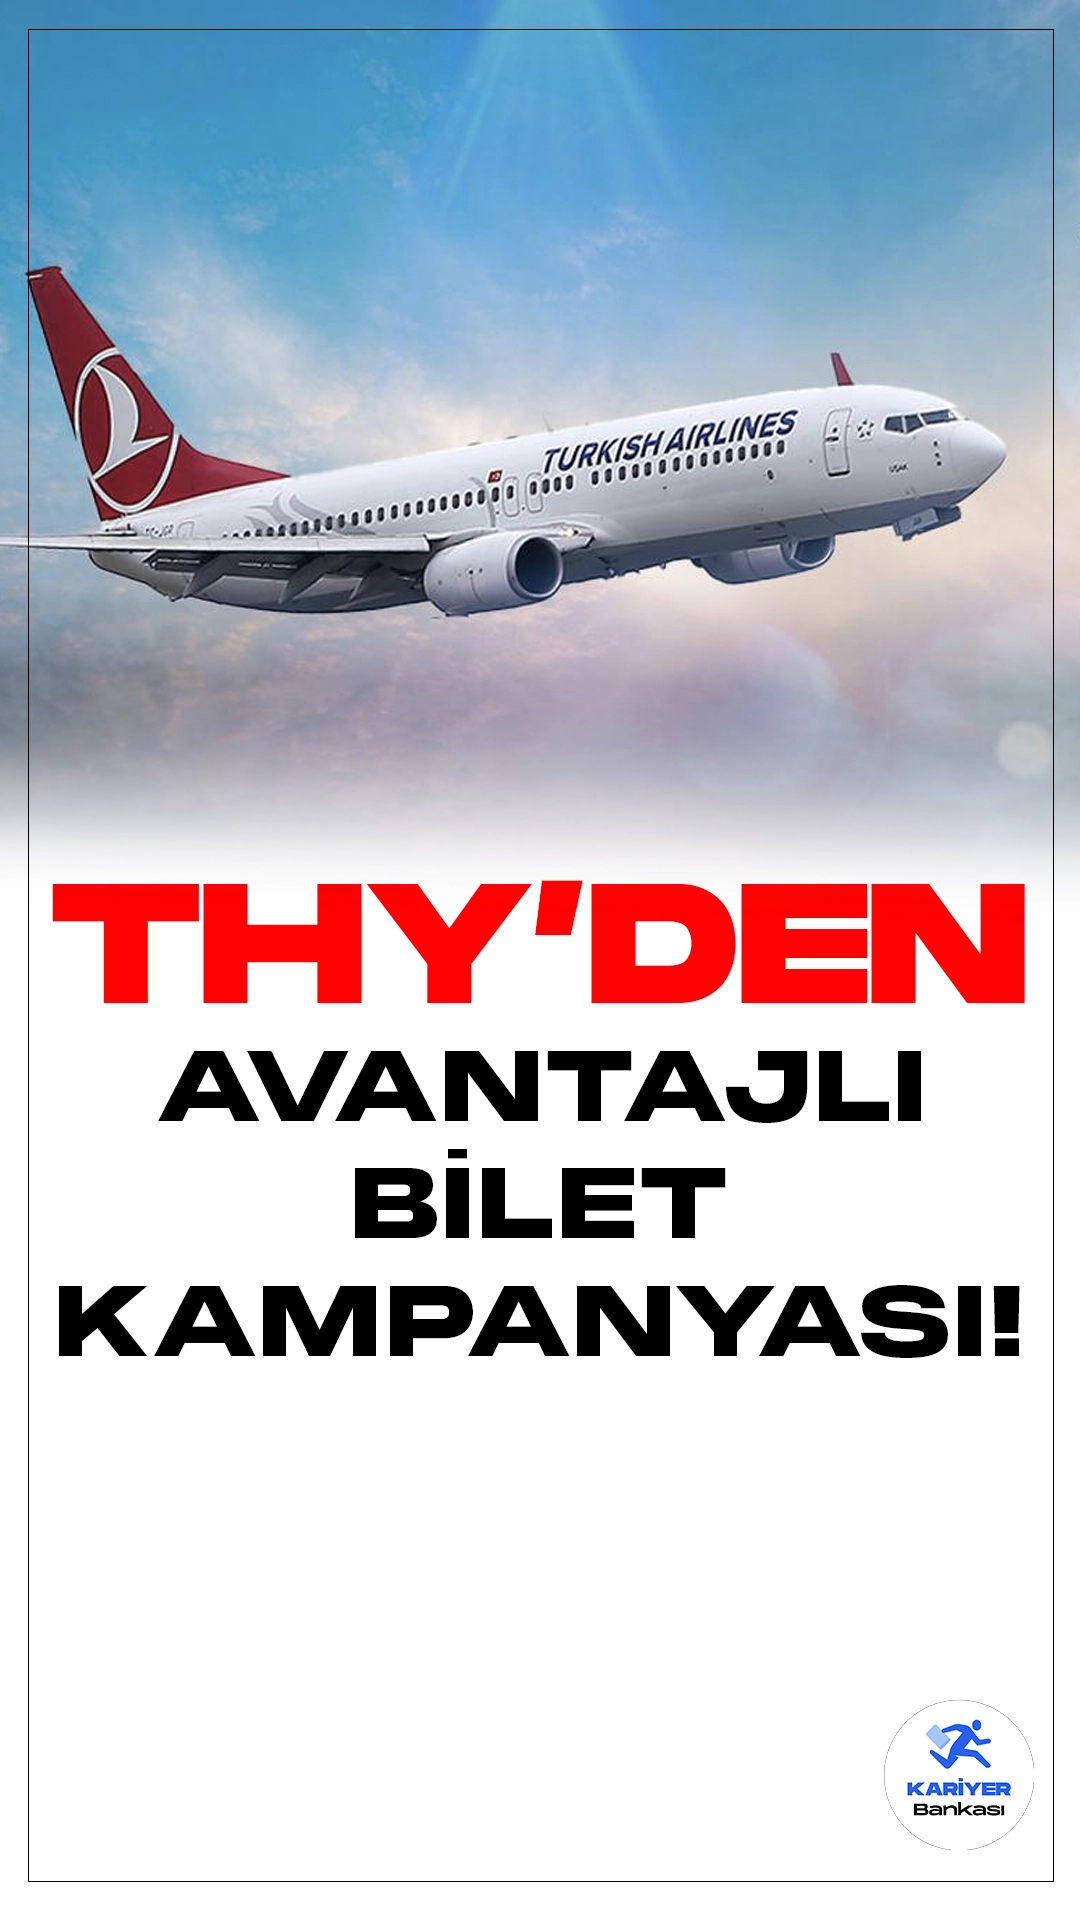 Türk Hava Yolları'ndan KKTC'ye Avantajlı Bilet Kampanyası Başladı!Türk Hava Yolları (THY), avantajlı biletleri ile İstanbul ve Antalya çıkışlı Kuzey Kıbrıs Türk Cumhuriyeti (KKTC) seferlerini başlatıyor. Bu muhteşem fırsattan yararlanmak için acele edin!